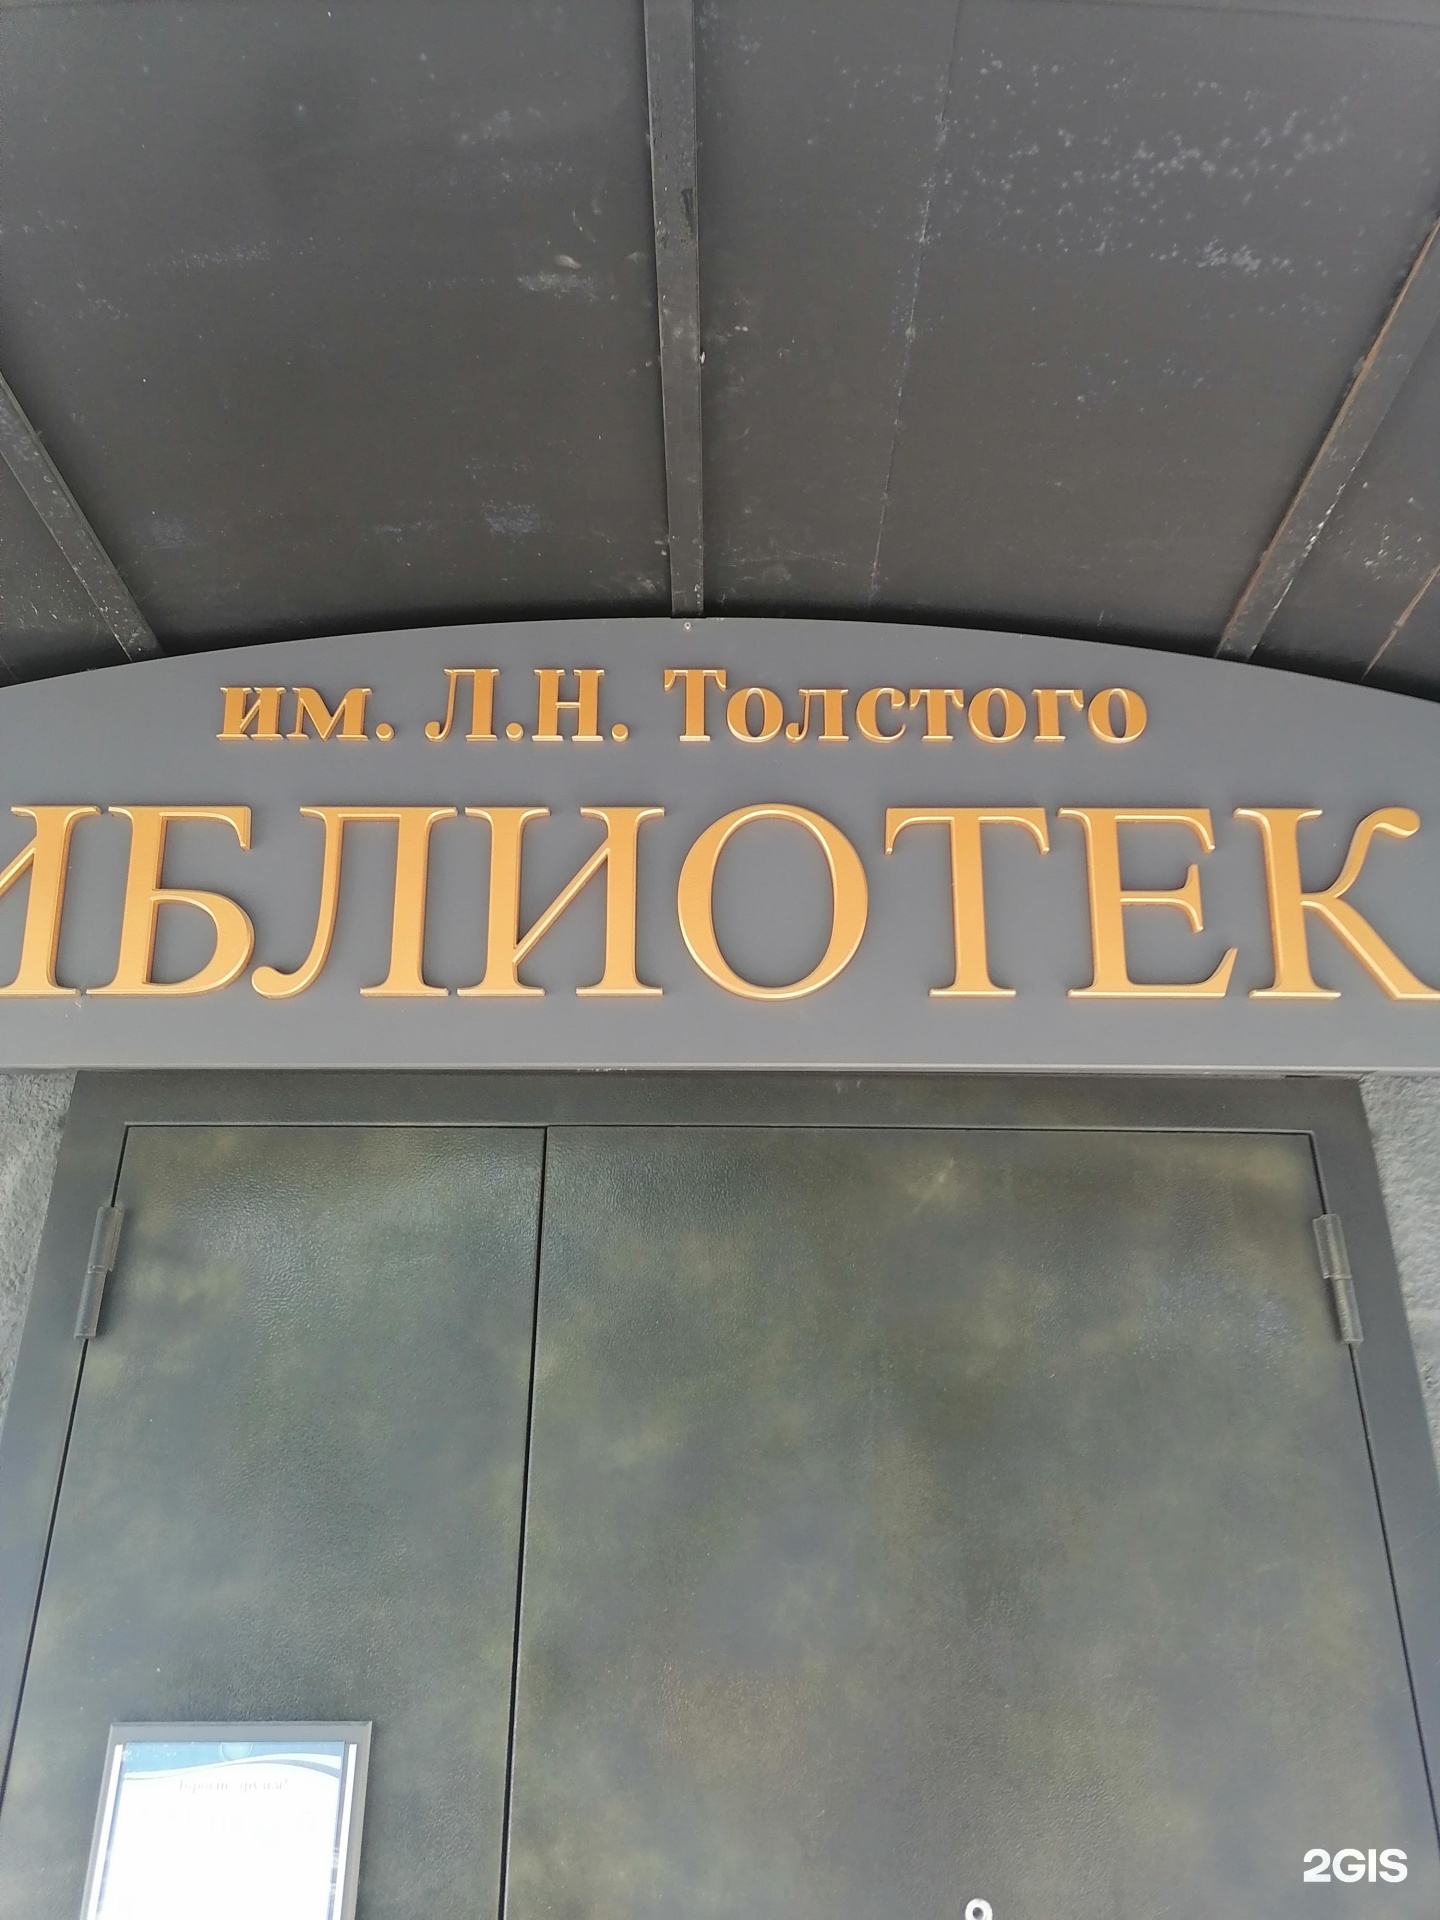 Библиотека Новосибирска имени л.н.Толстого. Библиотека им л н Толстого Новосибирск. Библиотеке н Толстого НСК.